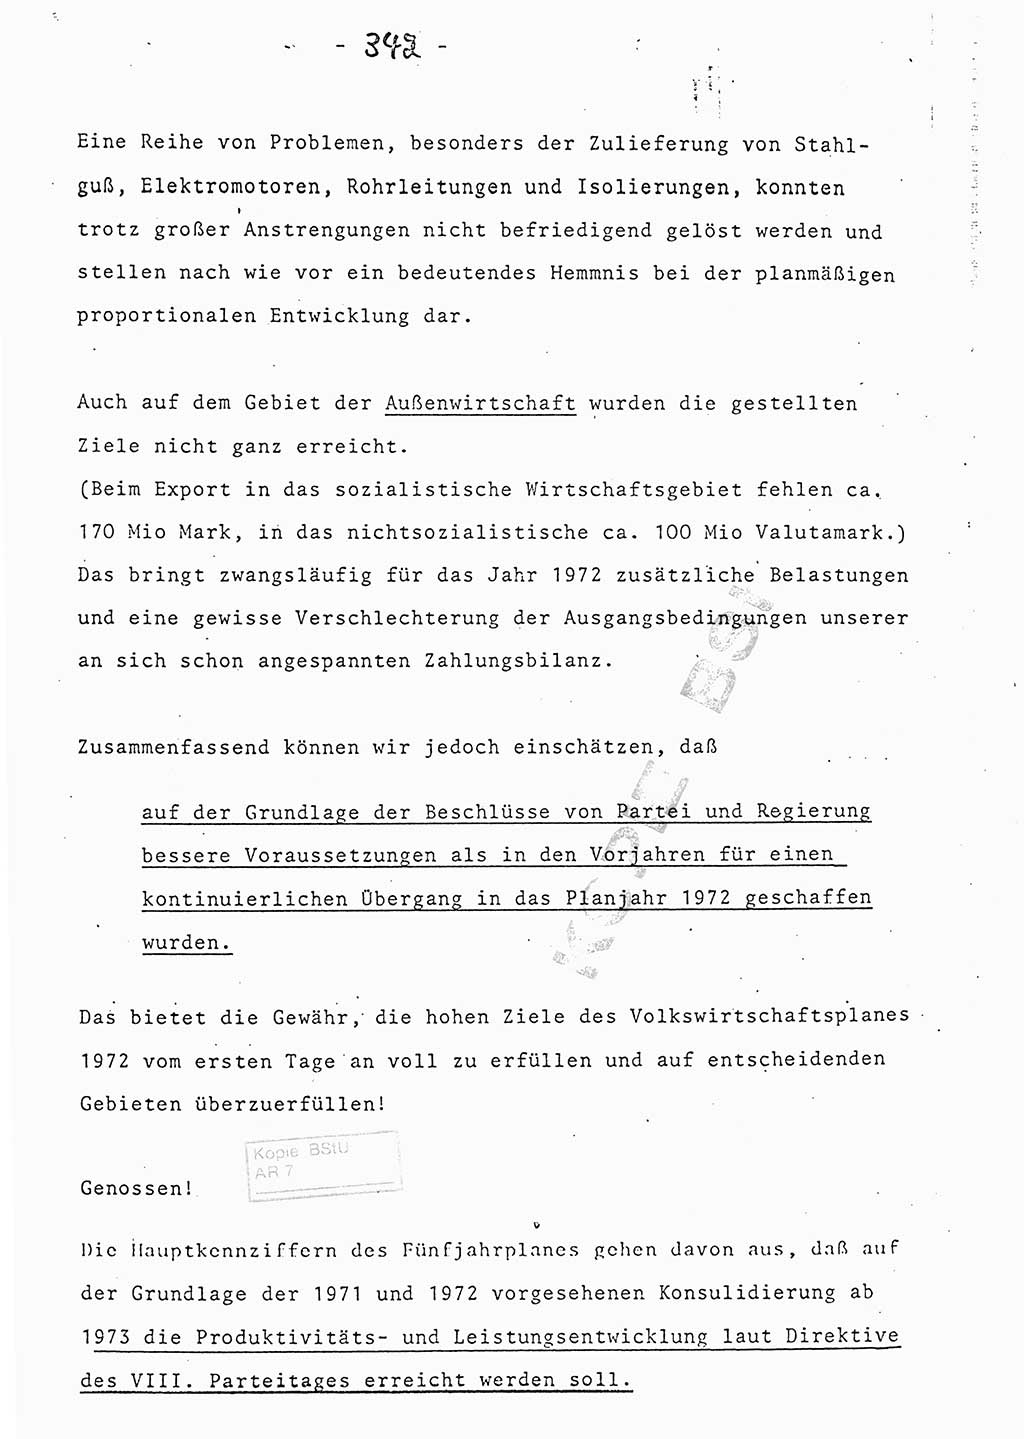 Referat (Entwurf) des Genossen Minister (Generaloberst Erich Mielke) auf der Dienstkonferenz 1972, Ministerium für Staatssicherheit (MfS) [Deutsche Demokratische Republik (DDR)], Der Minister, Geheime Verschlußsache (GVS) 008-150/72, Berlin 25.2.1972, Seite 342 (Ref. Entw. DK MfS DDR Min. GVS 008-150/72 1972, S. 342)